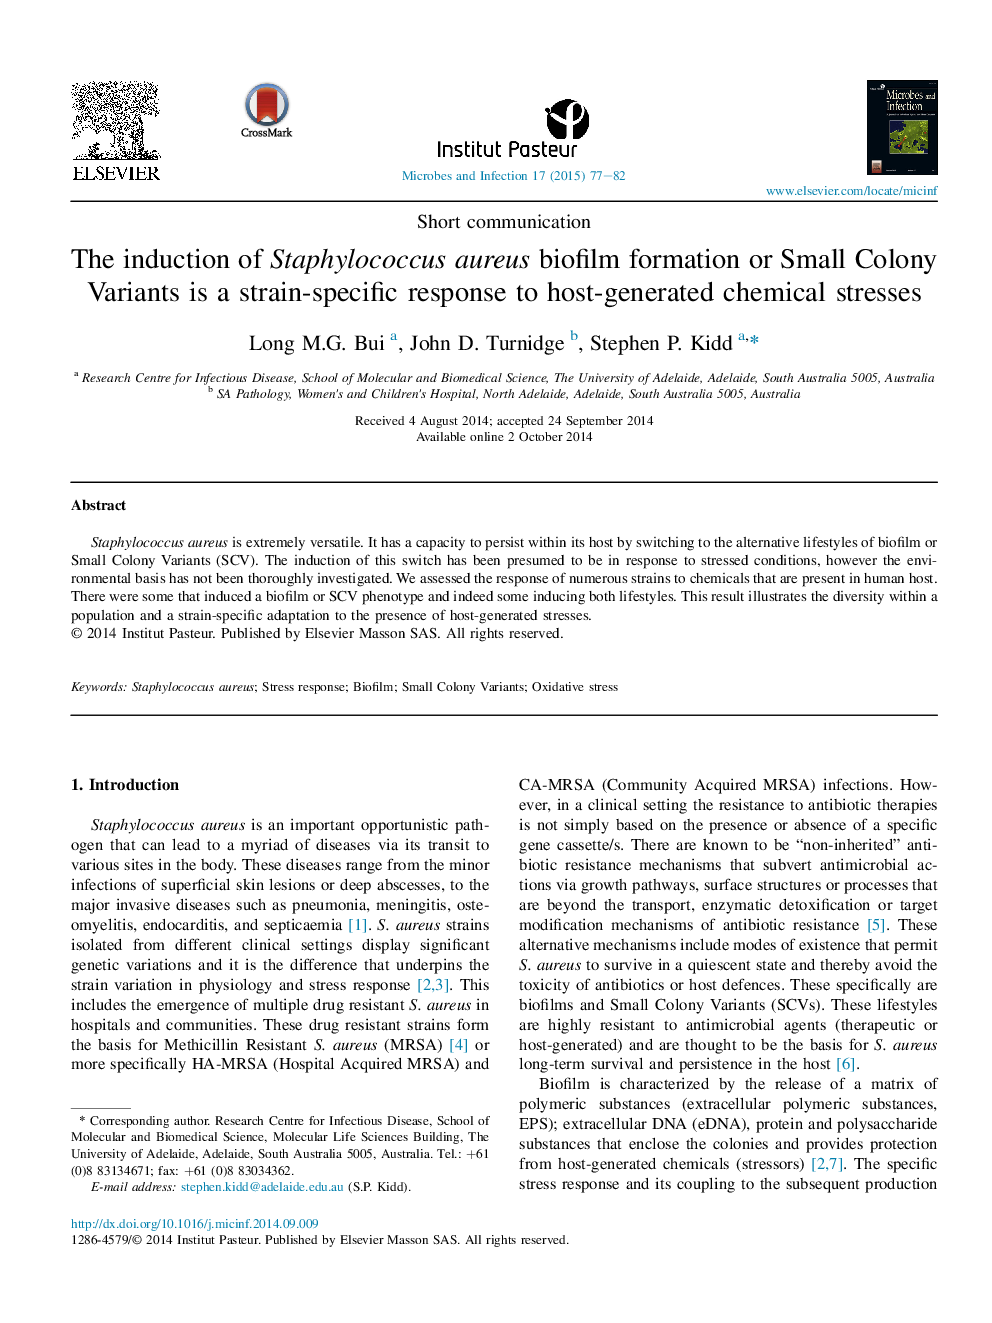 القاء تشکیل بیوفیلم استافیلوکوک اورئوس یا واژگان کوچک کلنی یک واکنش مخصوص کششی برای تنش های شیمیایی تولید شده توسط میزبان است 